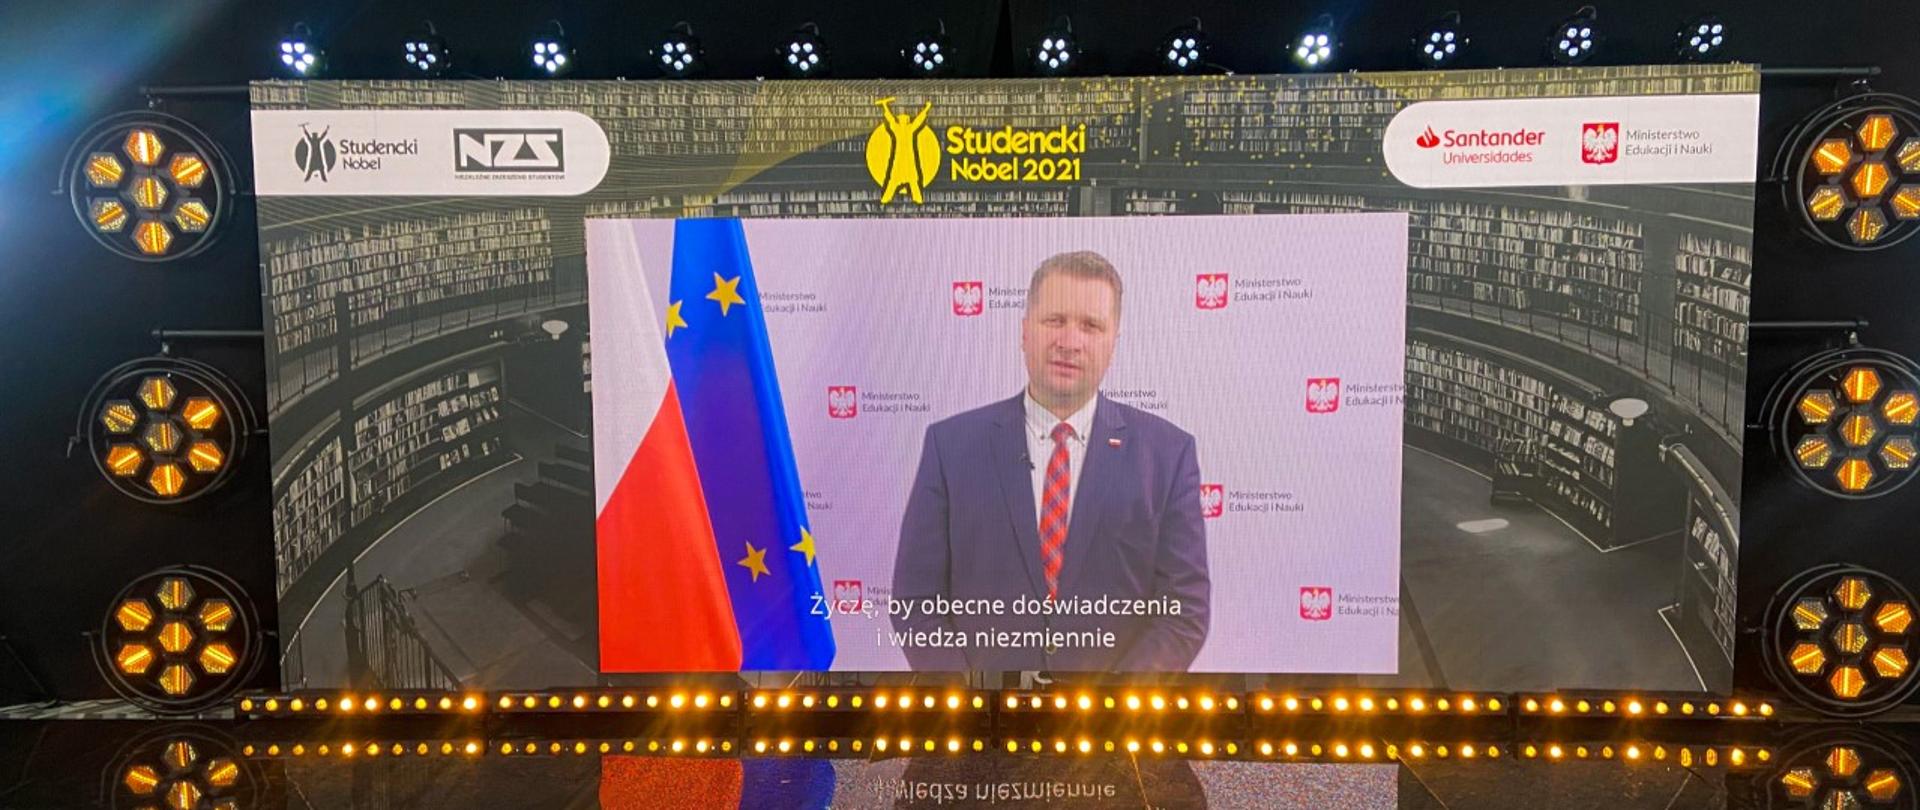 Przemówienie Ministra Czarnka wyświetlone na telebimie podczas Gali